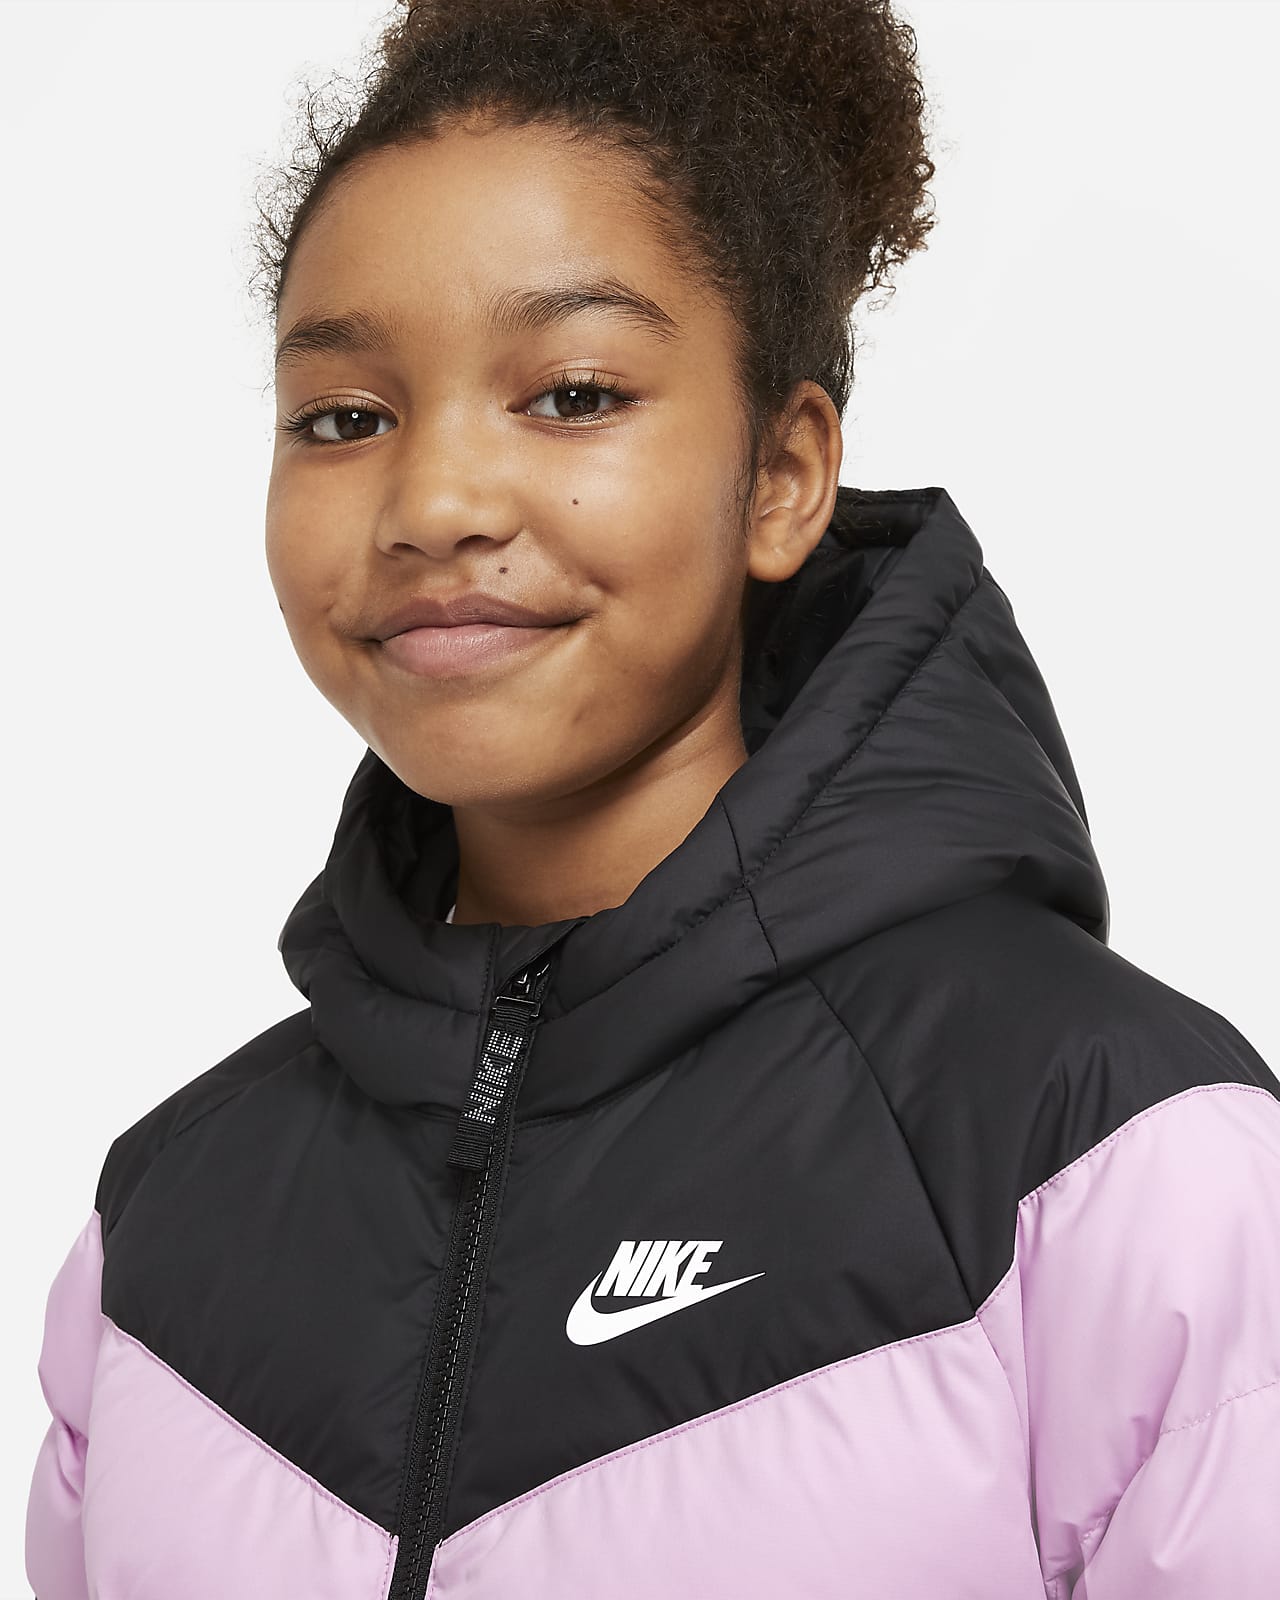 Kurtka dla dzieci Nike Sportswear Lined Fleece czarna JUNIOR 856195 010